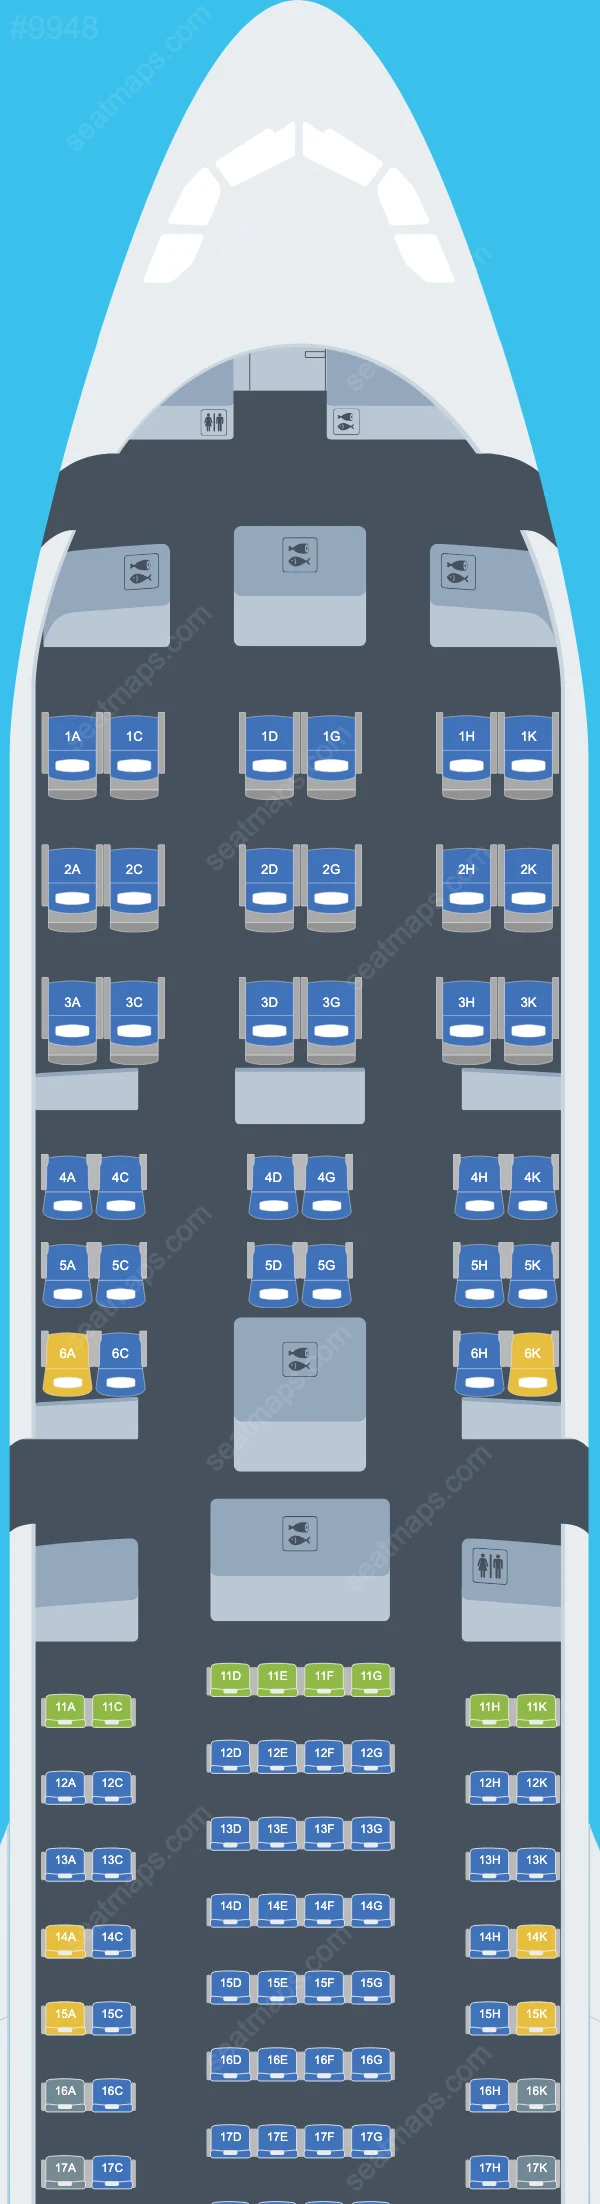 Corsair International Airbus A330 Seat Maps A330-300 V.2